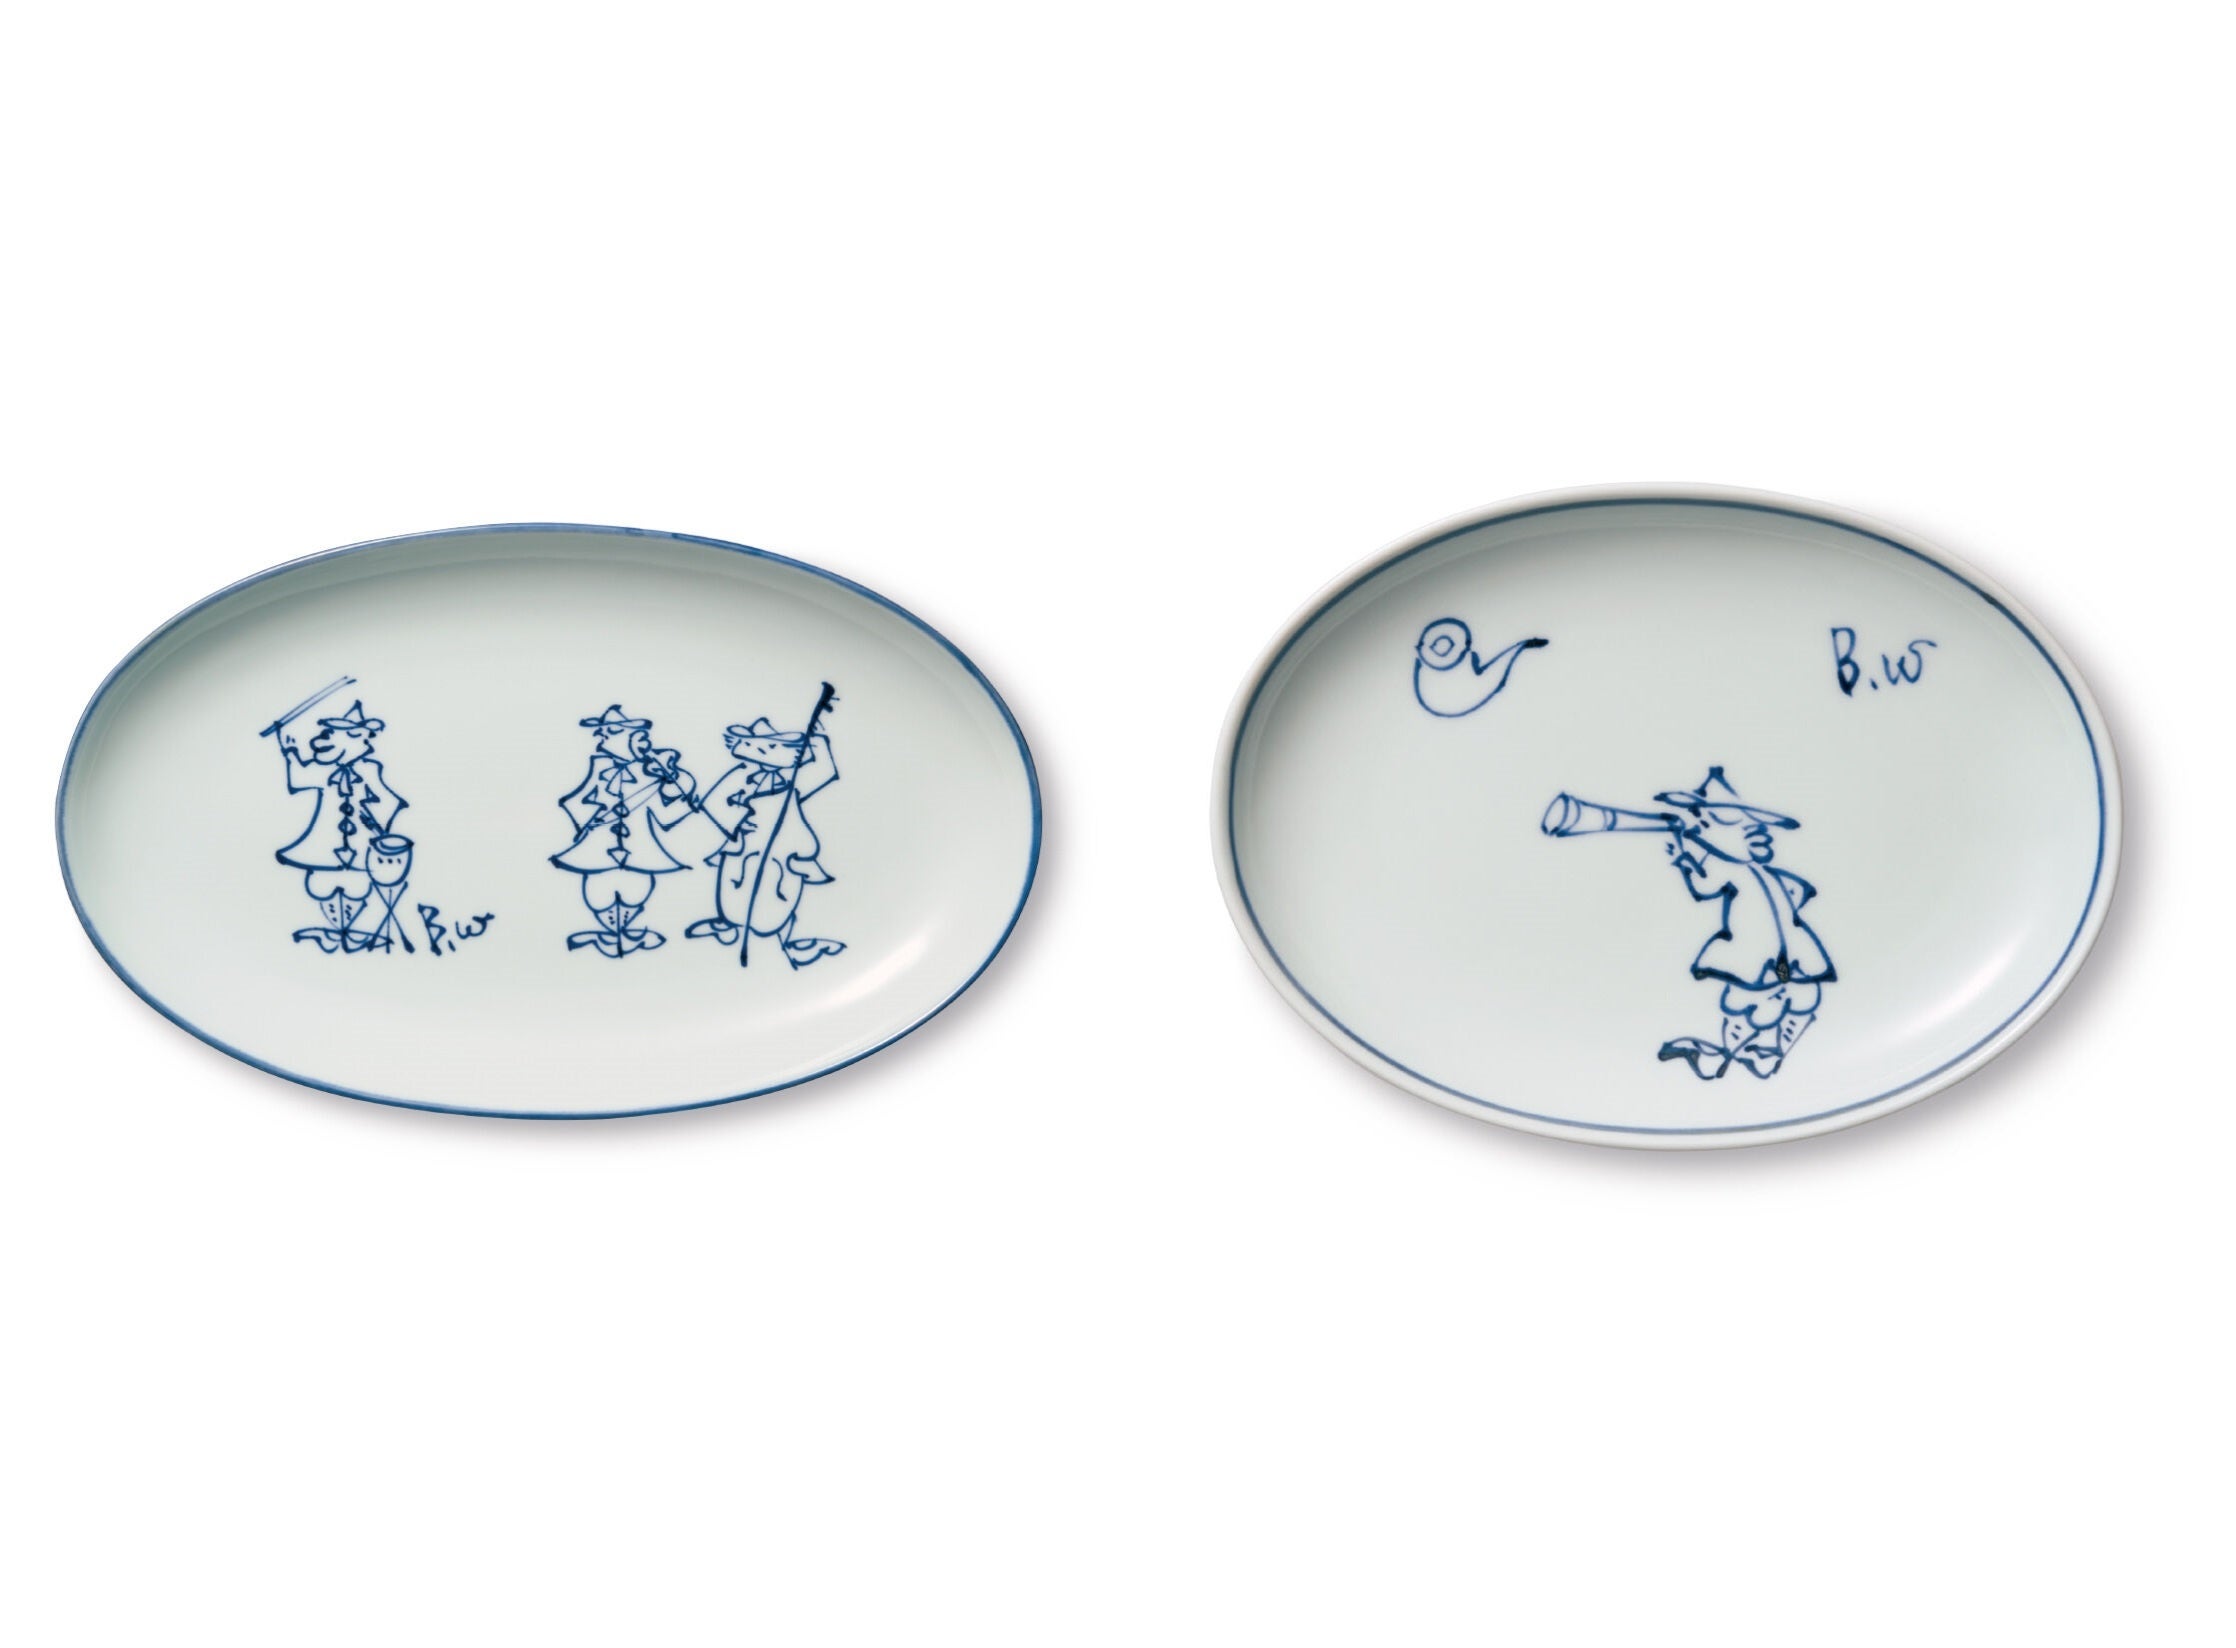 〈大きなお皿(左)と〈小さなお皿(右〉〉で異なったデザインを用意しています。